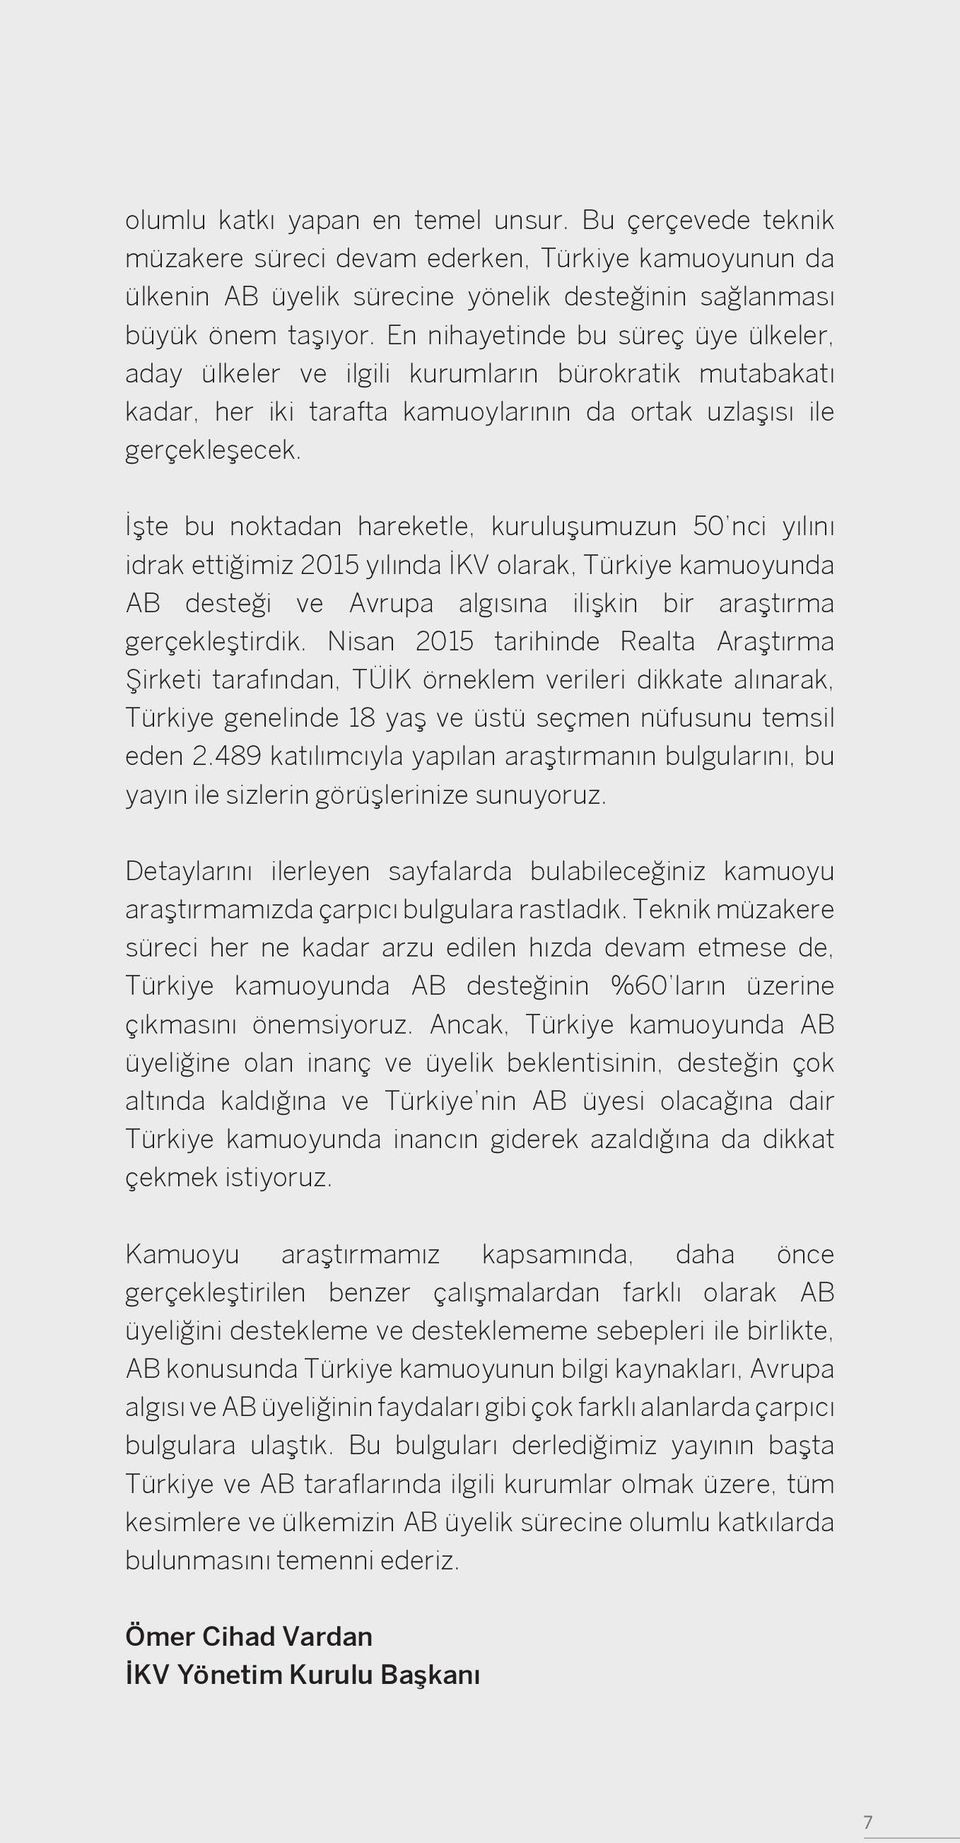 İşte bu noktadan hareketle, kuruluşumuzun 50 nci yılını idrak ettiğimiz 2015 yılında İKV olarak, Türkiye kamuoyunda AB desteği ve Avrupa algısına ilişkin bir araştırma gerçekleştirdik.